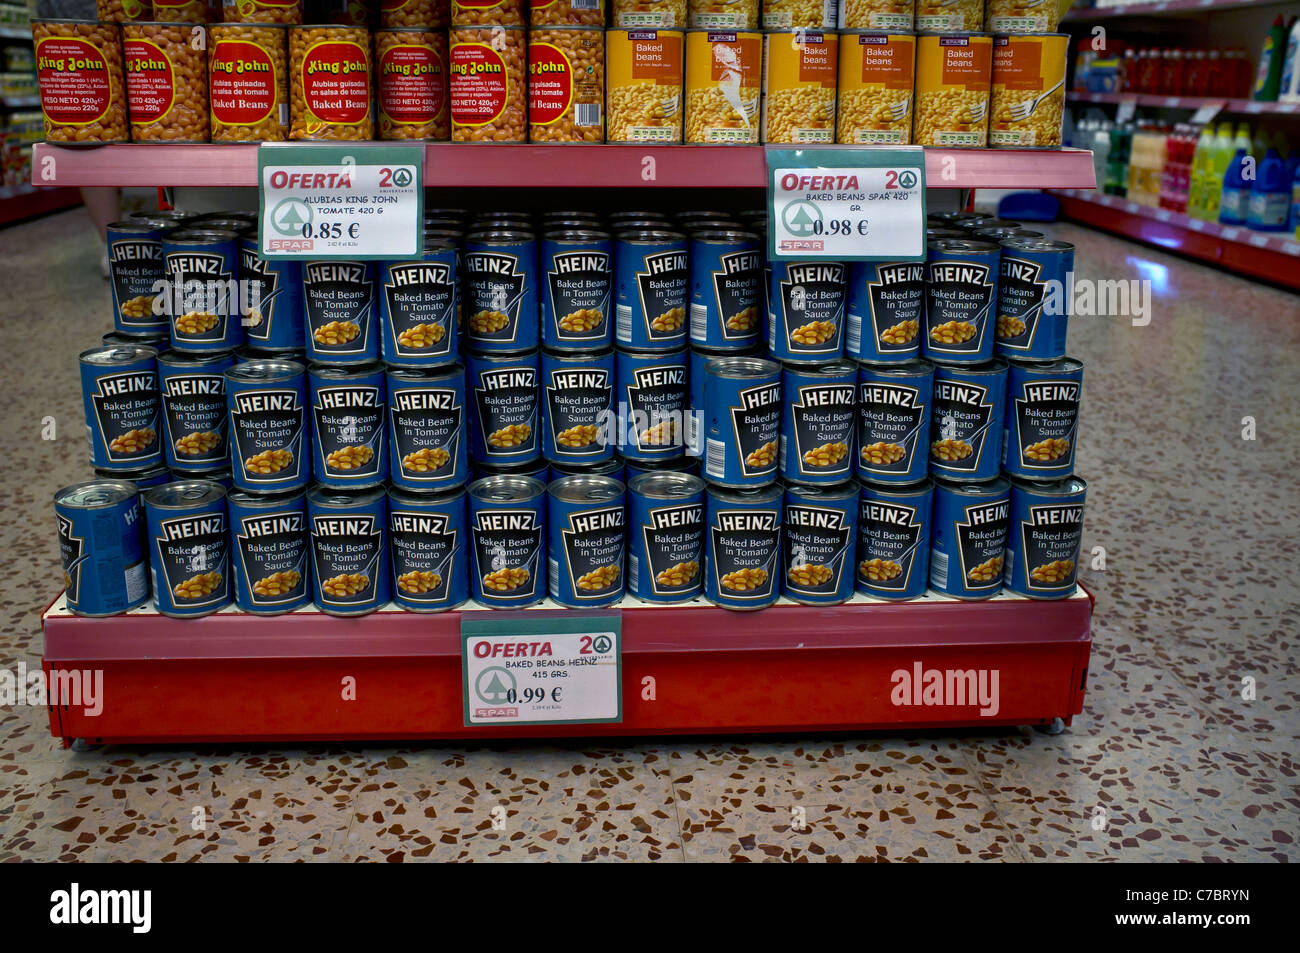 Heinz Baked Beans en venta en supermercados de Spa, Menorca, España Foto de stock